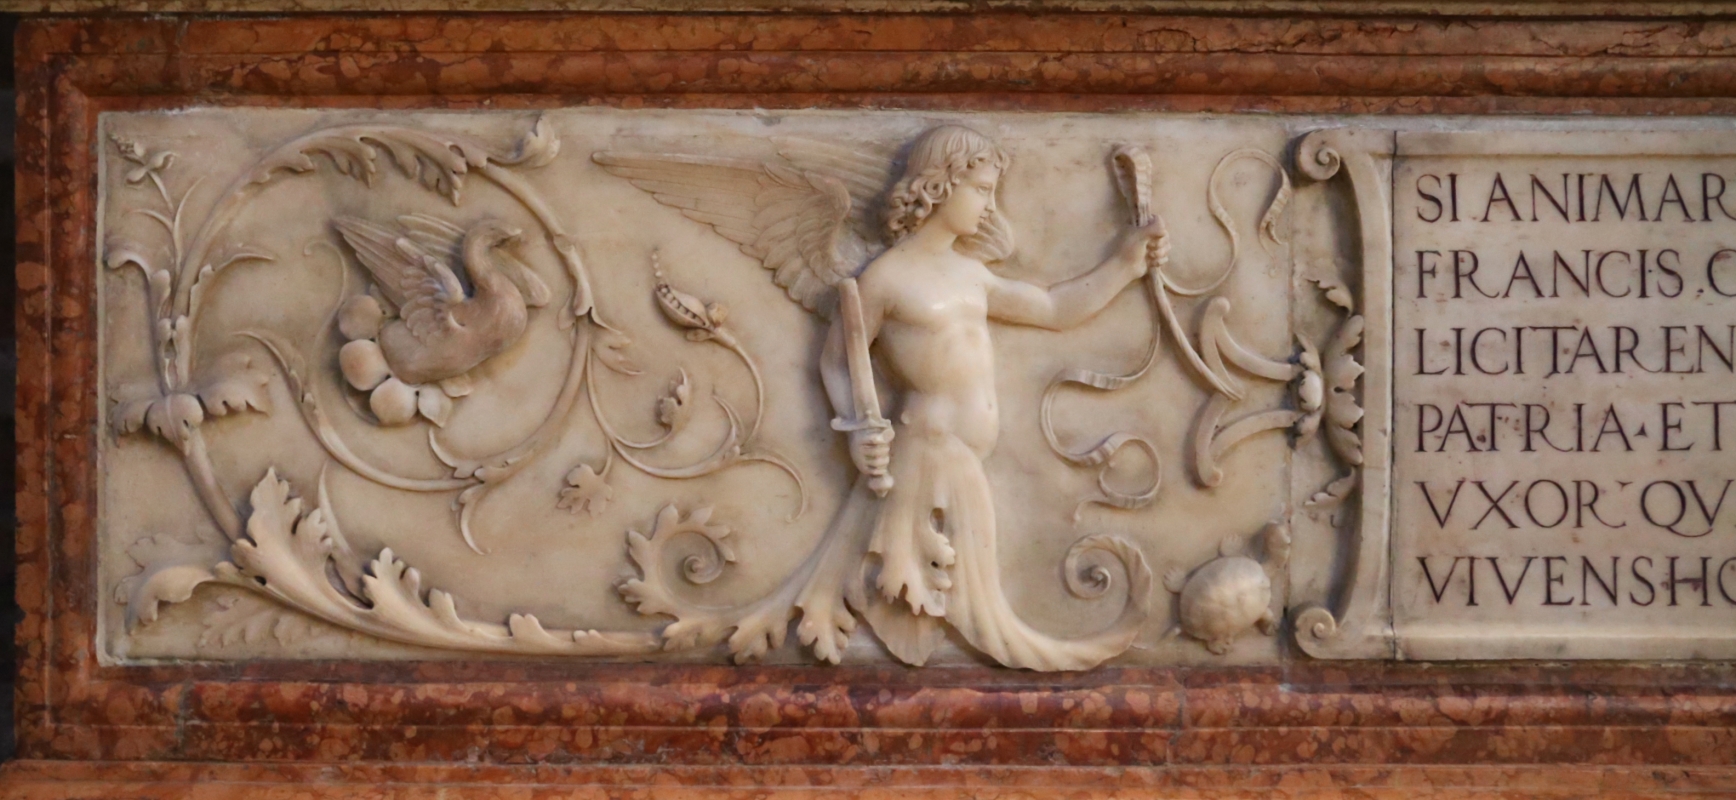 Bartolomeo spani, monumento funebre di francesco molza, 1516, 02 girali con angelo armato di spada - Sailko